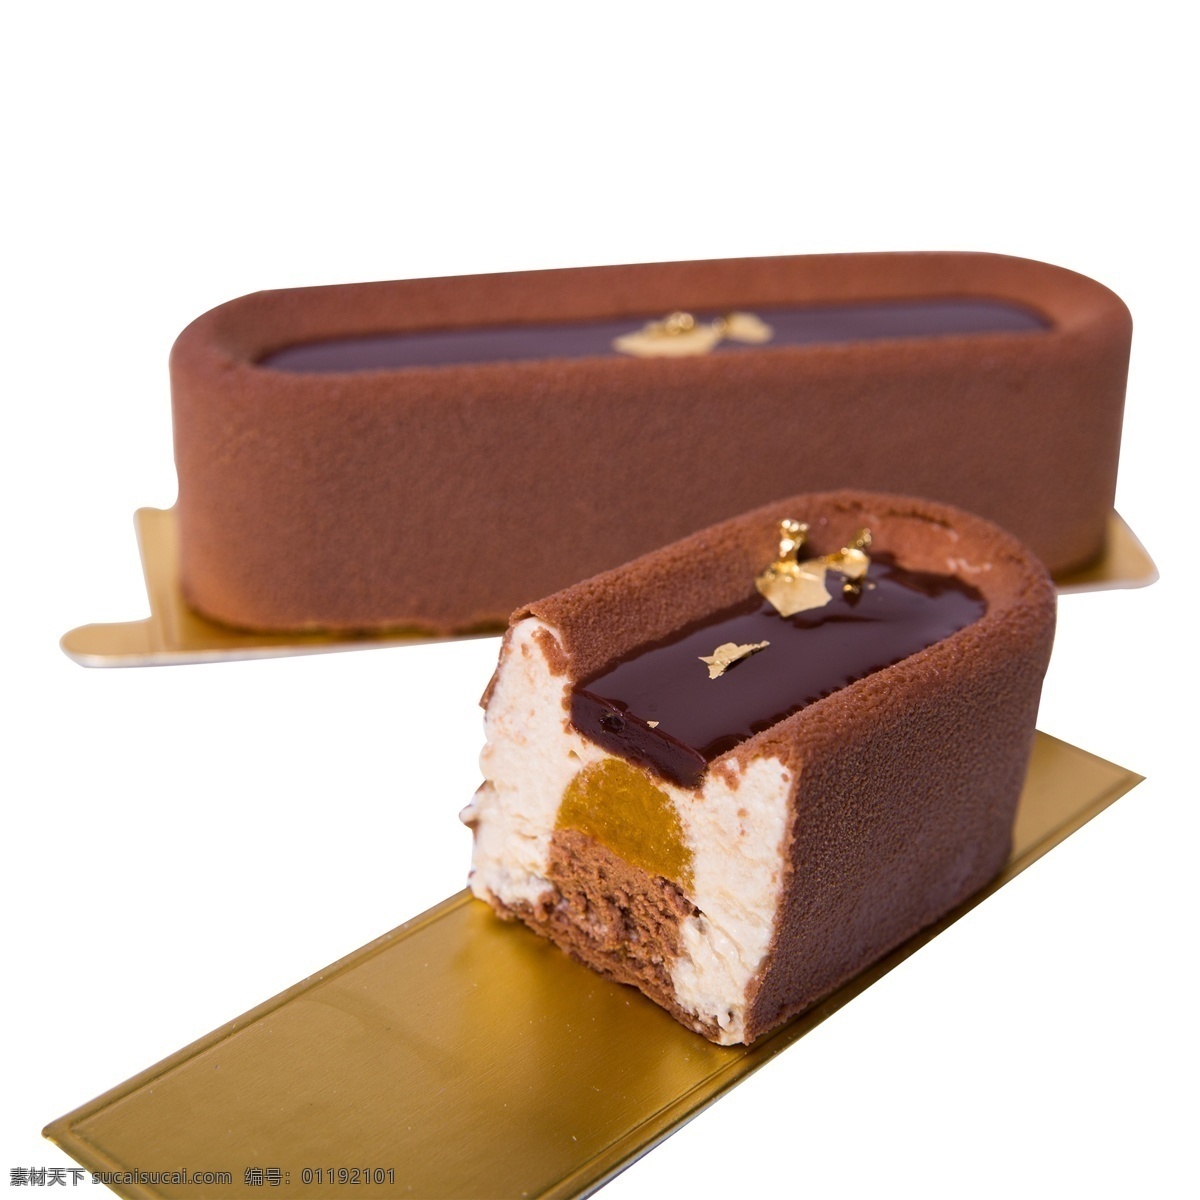 巧克力 夹心 法式 甜点 方块巧克力 巧克力点心 点心 美食 法式甜品 甜品 朱古力 两个 两个巧克力